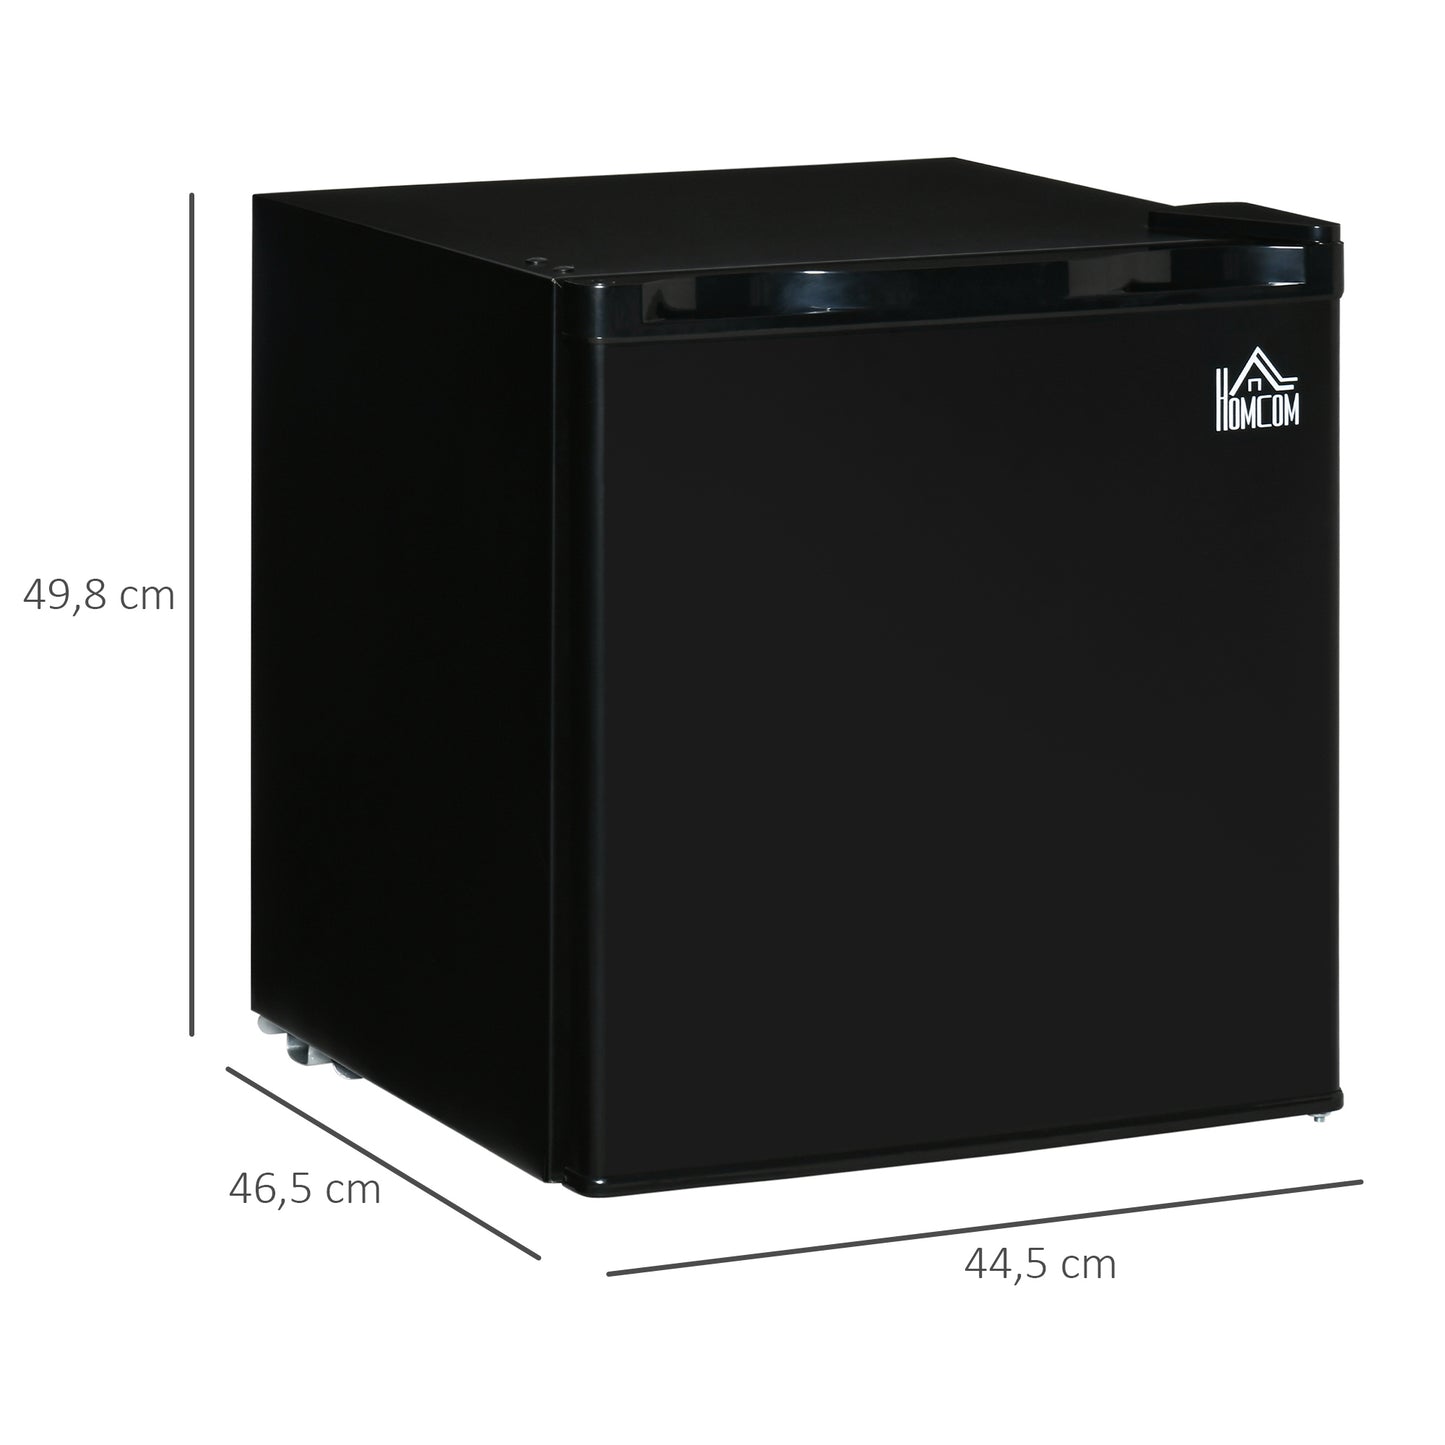 HOMCOM Nevera Eléctrica Pequeña 46L de Capacidad Mini Bar con Rejilla Ajustable Compartimento Congelador y Puerta Reversible Bajo Consumo 44,5x46,5x49,8 cm Negro